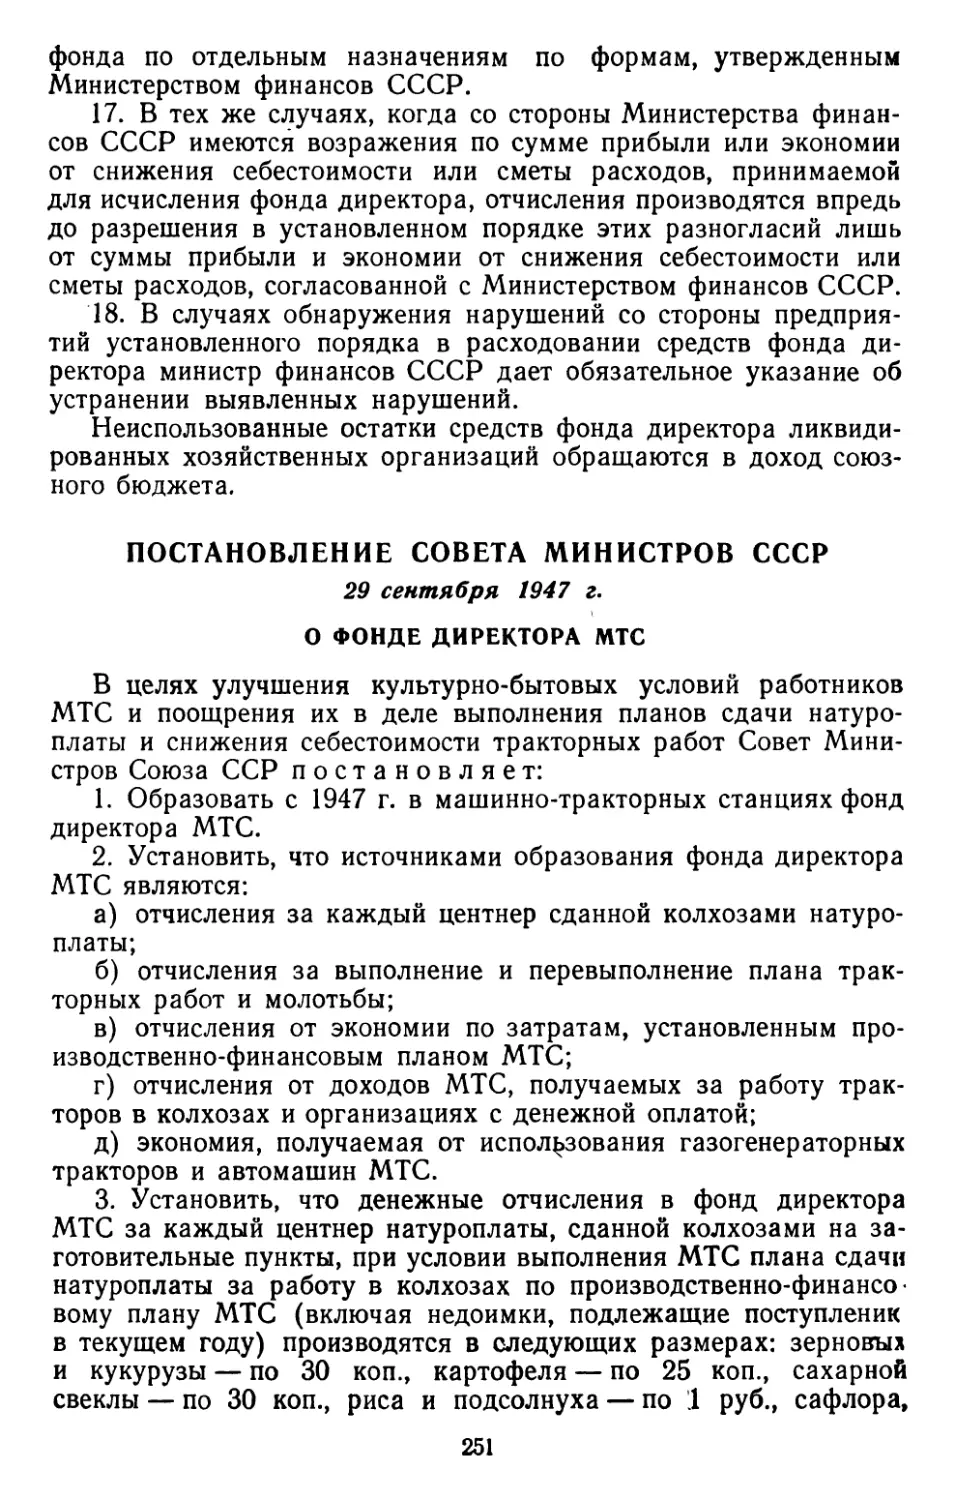 Постановление Совета Министров СССР, 29 сентября 1947 г. О фонде директора МТС